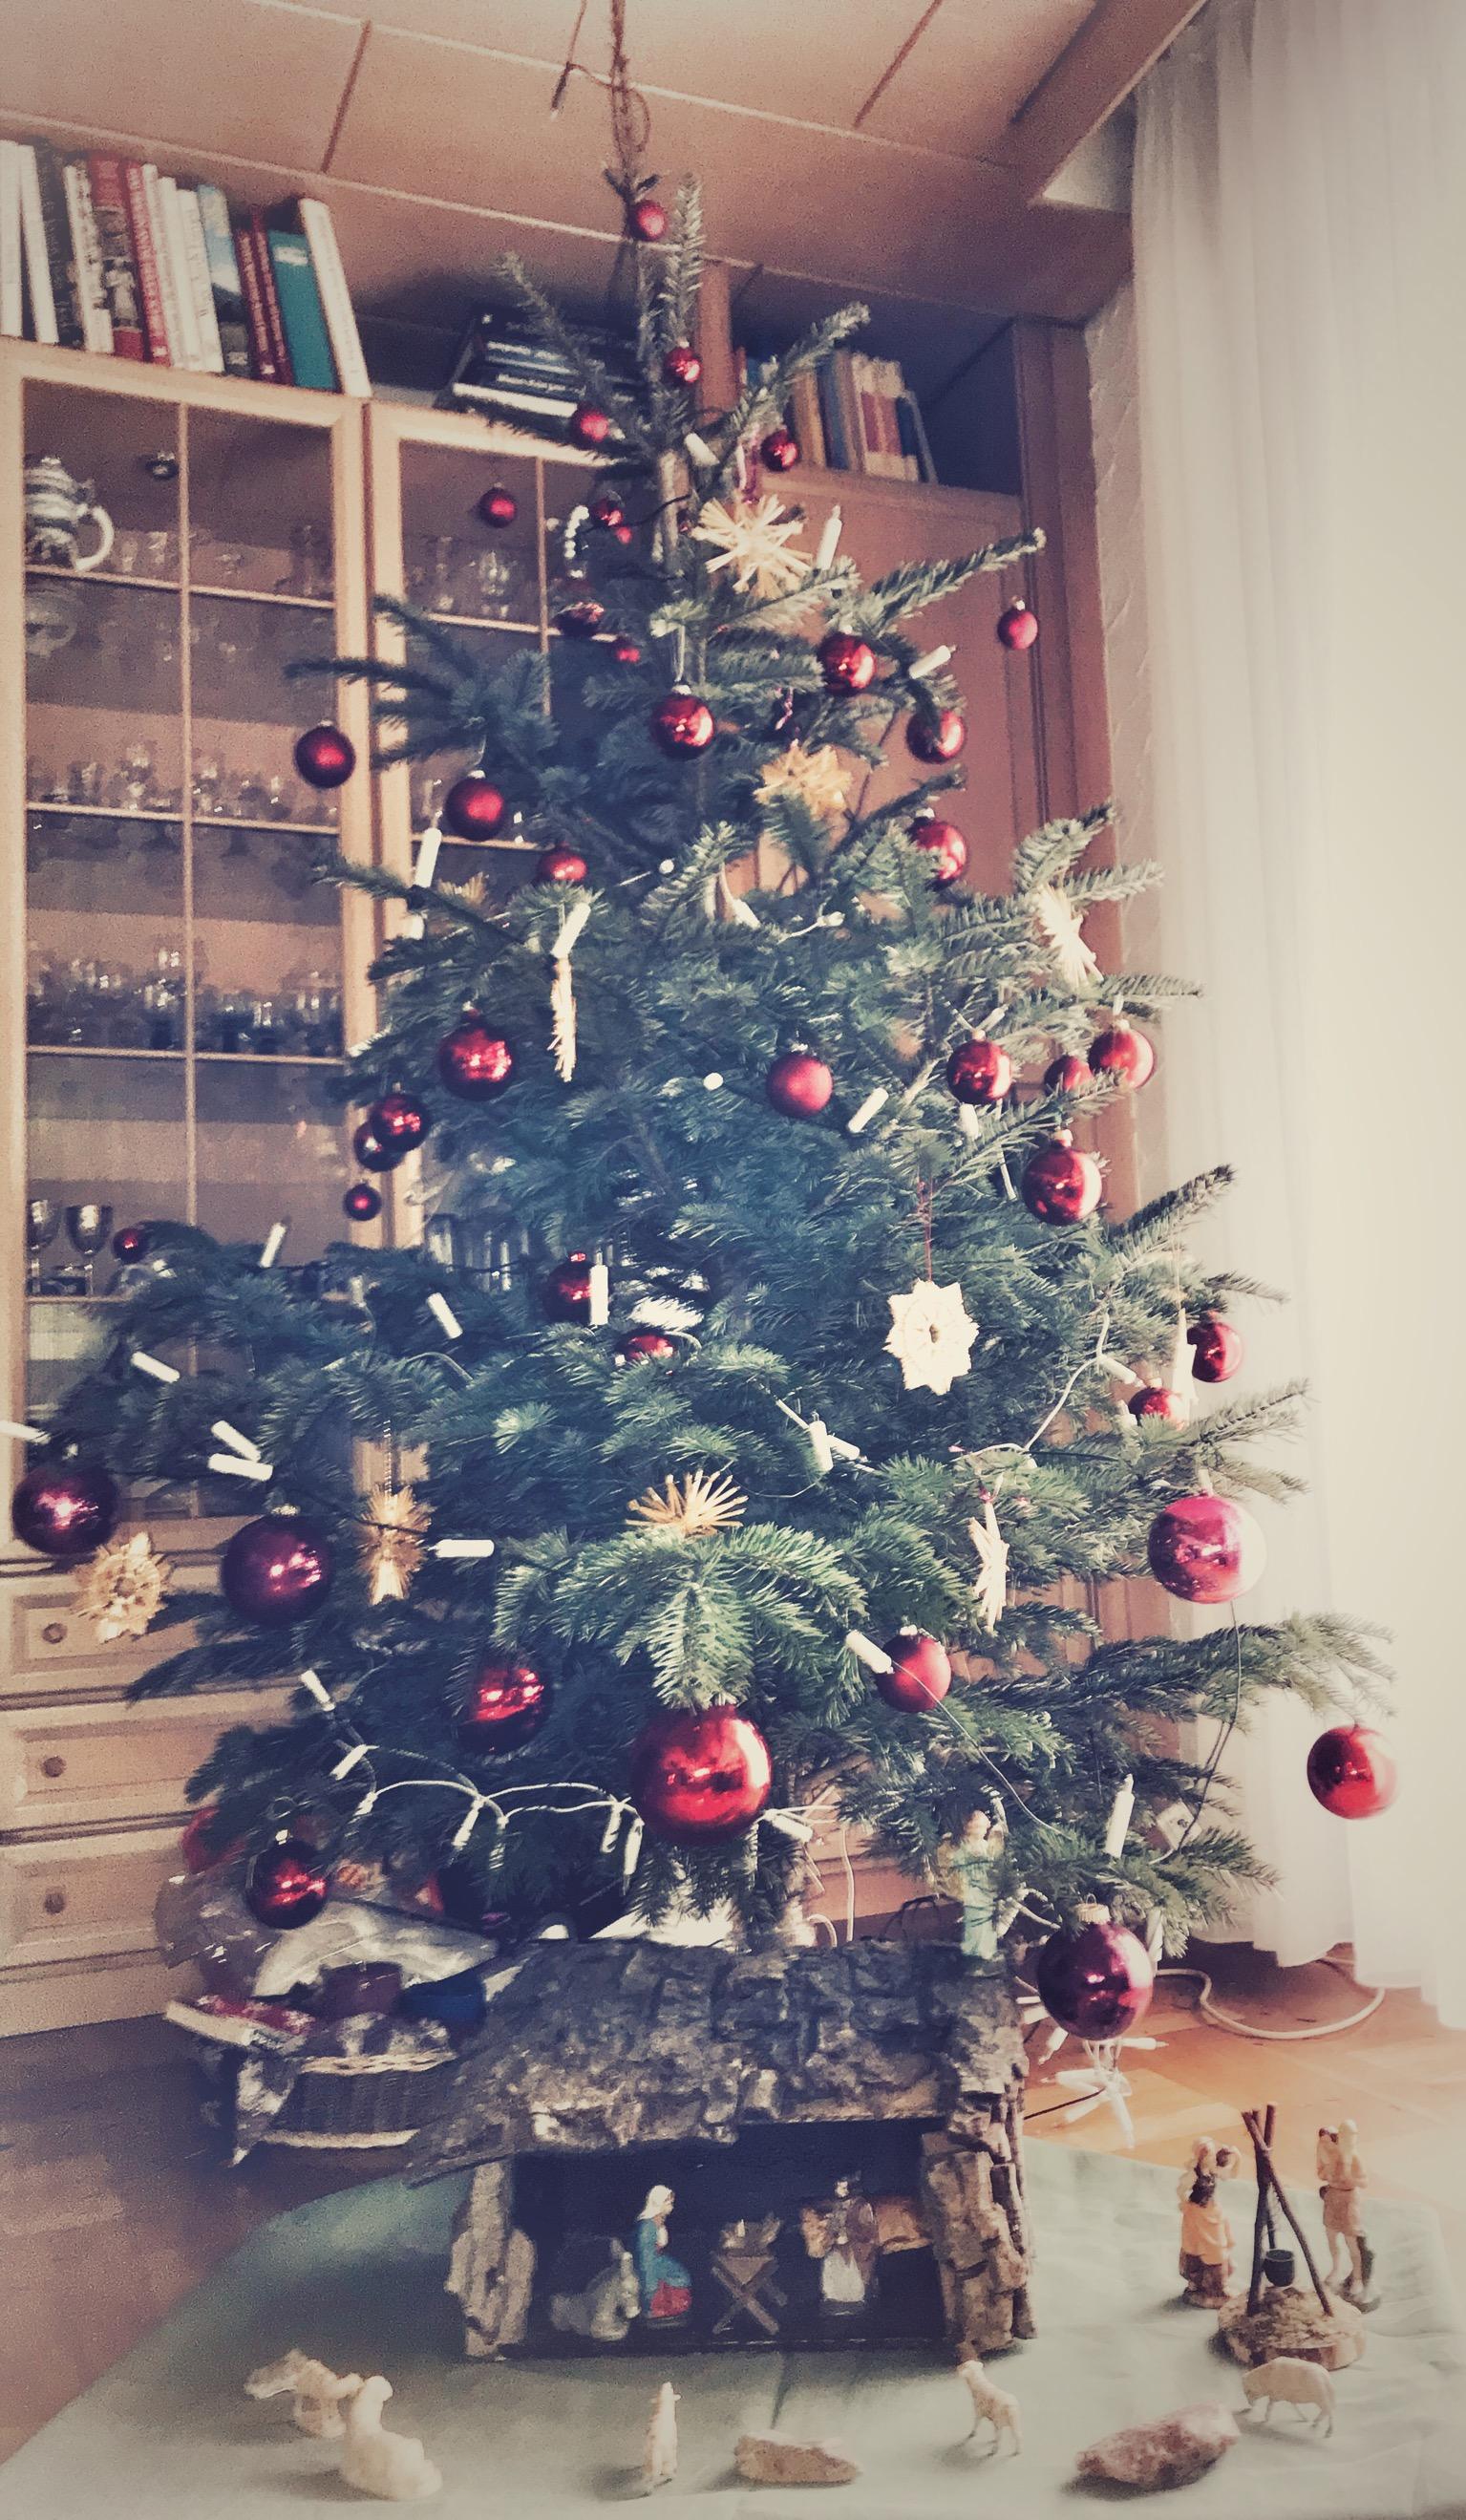 #Weihnachtsbaum
#Krippe
Unser Weihnachtsbaum jetzt mit Krippe